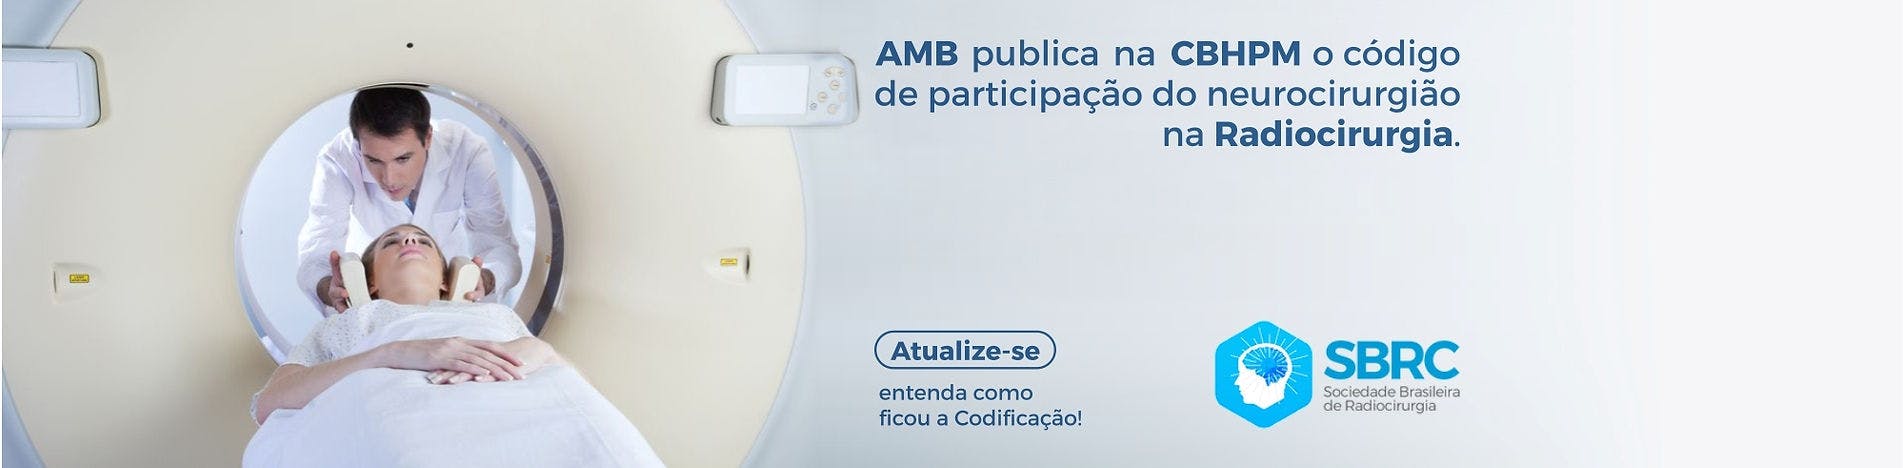 AMB publica na CBHPM o código de participação do neurocirurgião na Radiocirurgia